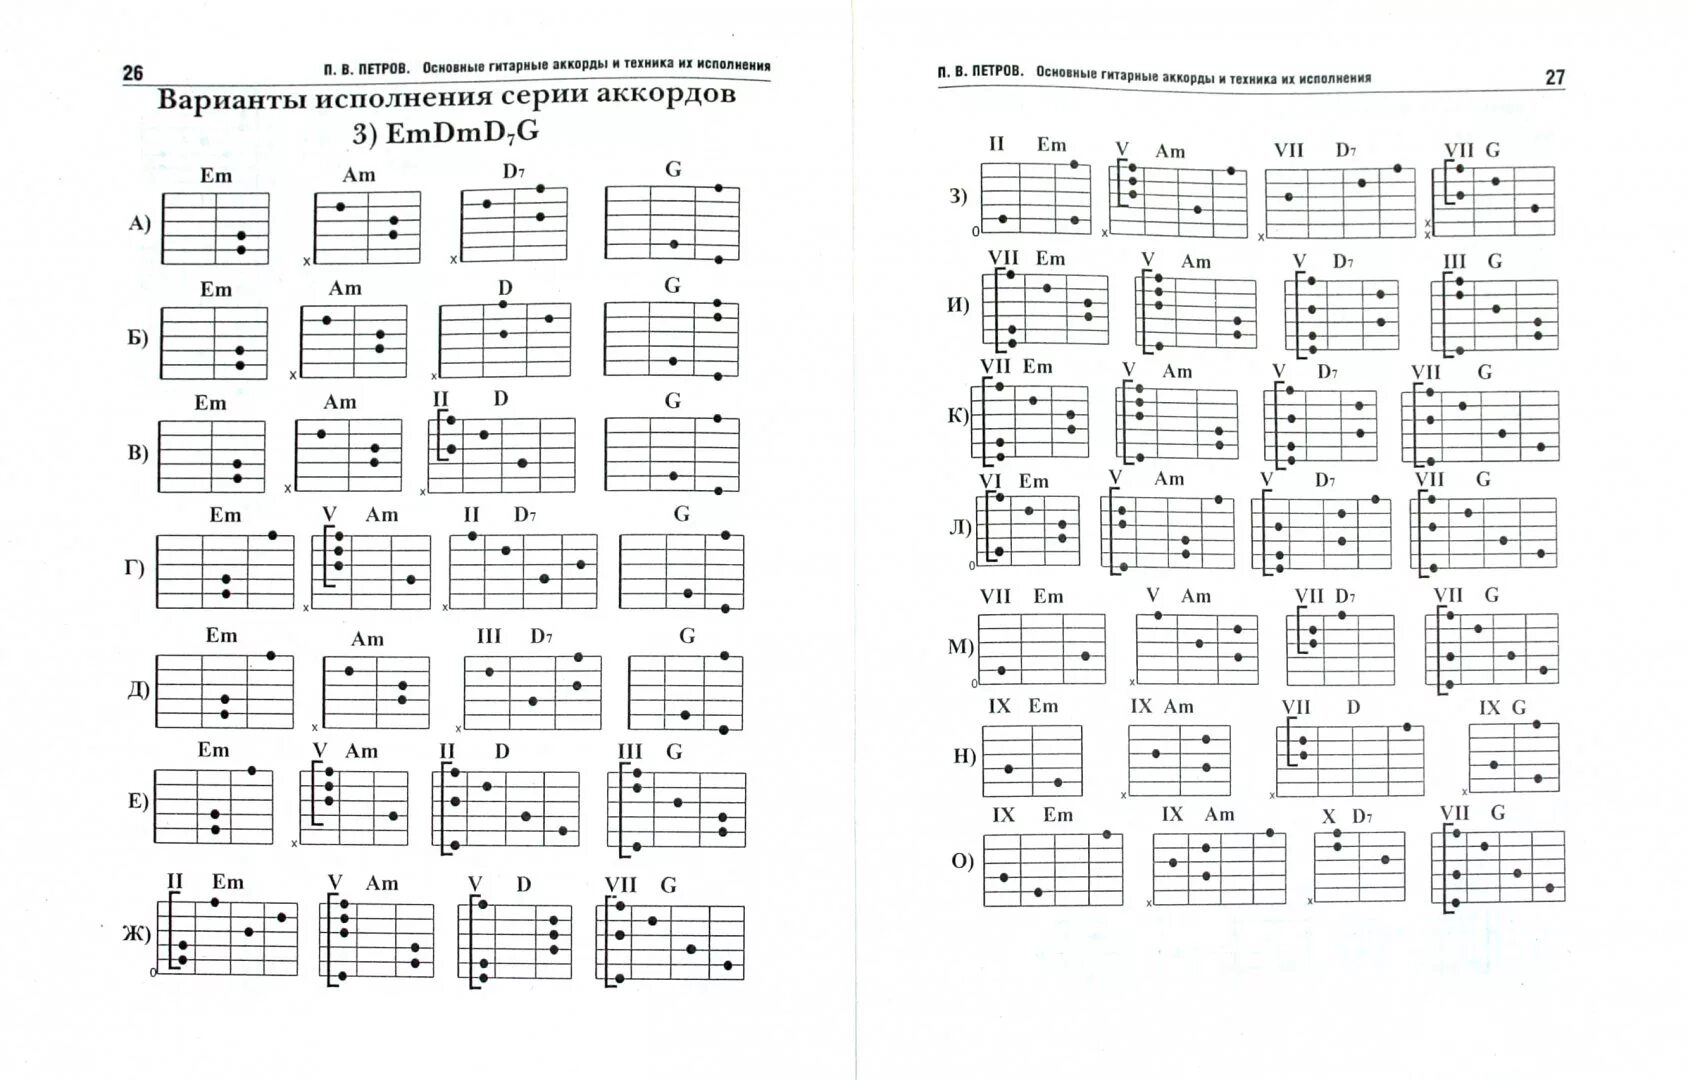 Таблица аккордов для гитары 6 струн для начинающих. Гитарные аккорды таблица для начинающих. Аккорды на 6 струнной гитаре. Таблица простых аккордов для гитары 6 струн. Аккорды для гитары таблица для начинающих